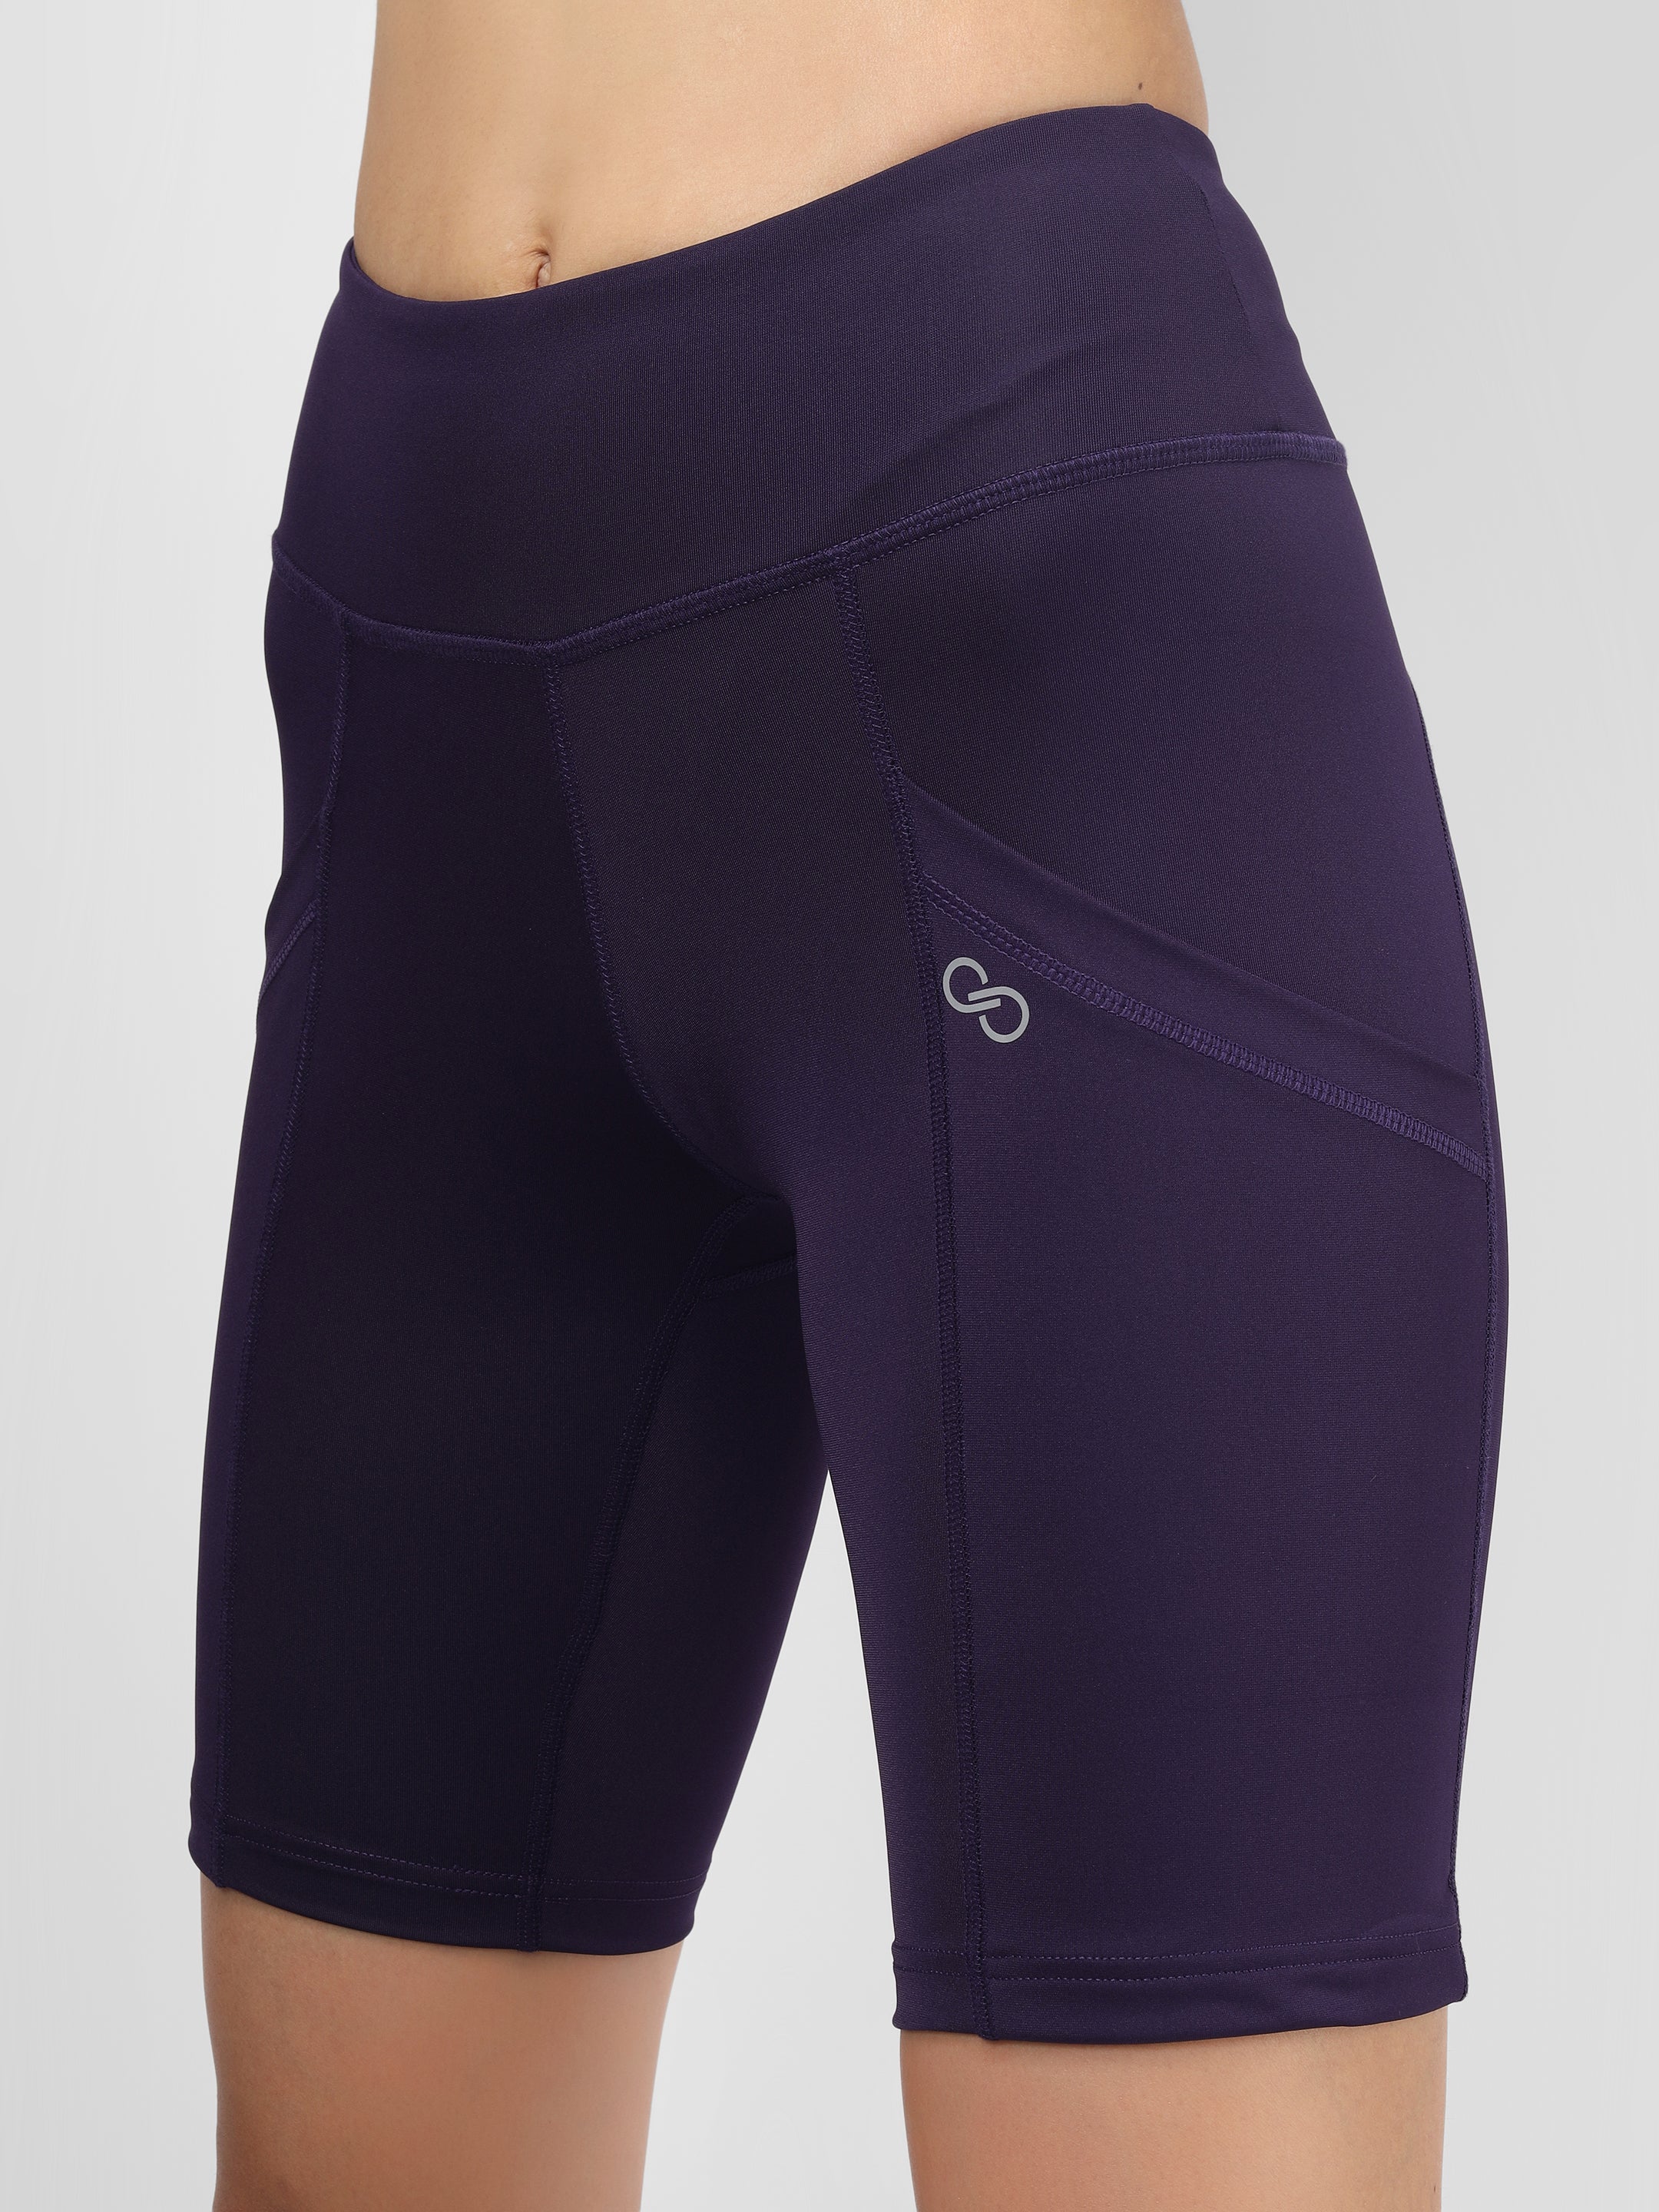 Creeluxe Fierce Purple Women's Shorts